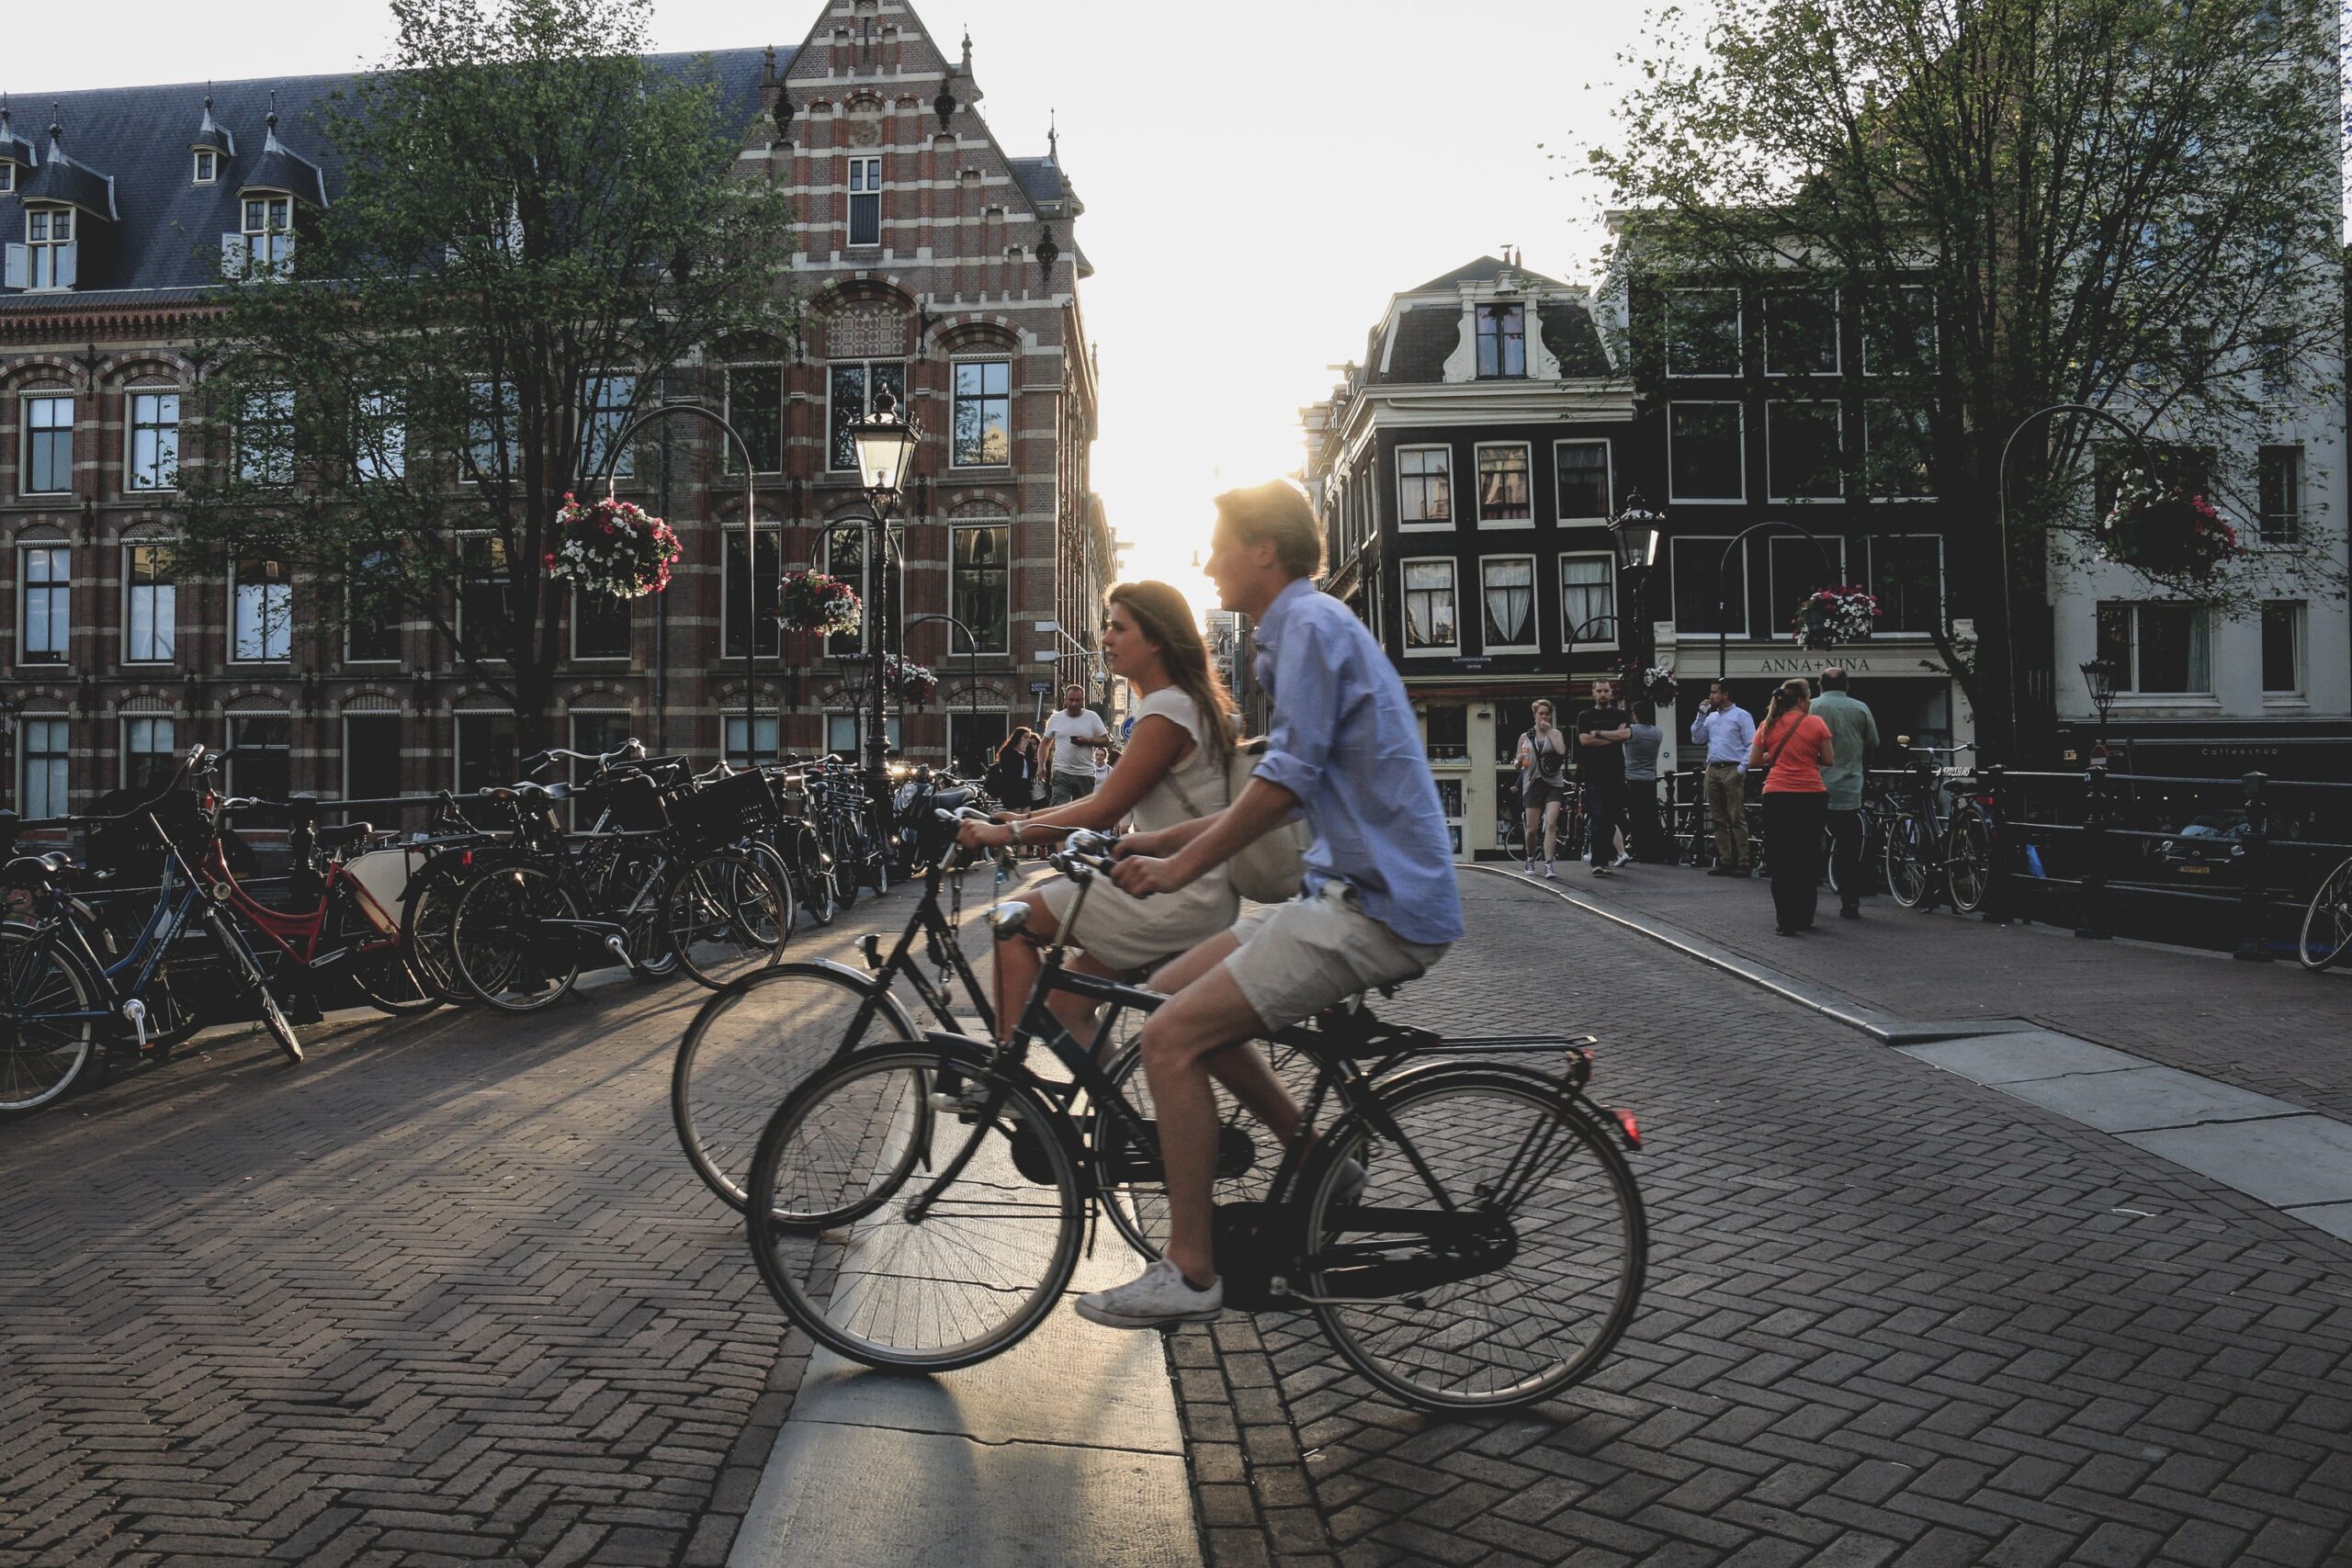 Amsterdã é considerada uma cidade inteligente, principalmente graças ao fato de a maioria da população usar a bicicleta como meio de transporte